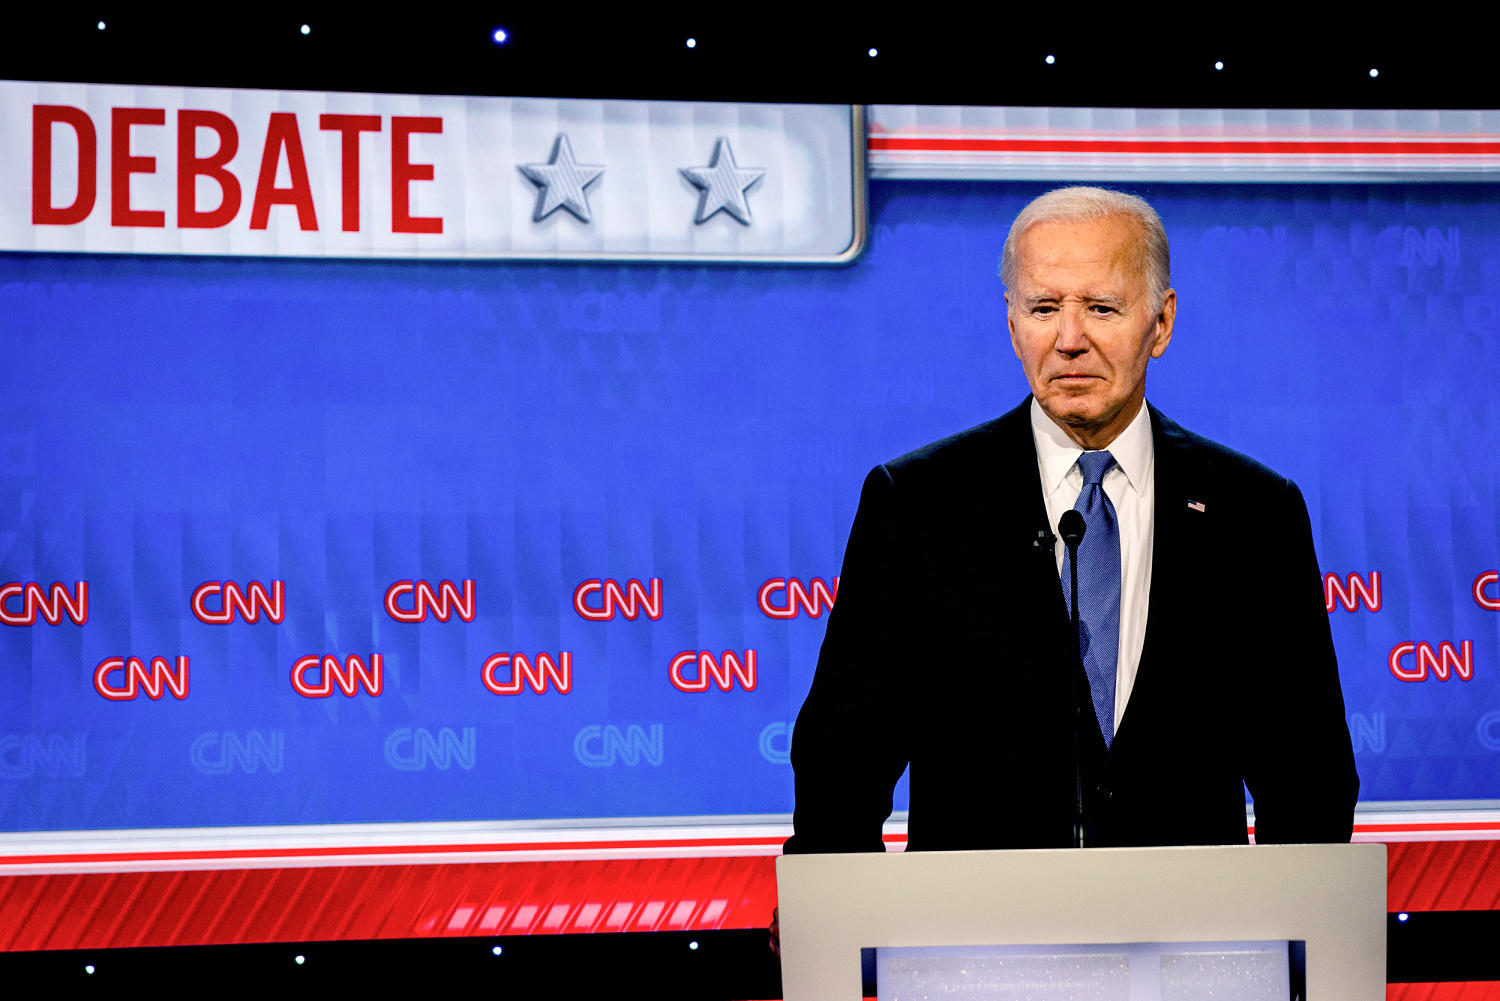 Biden quips that he 'almost fell asleep onstage' at last week's presidential debate